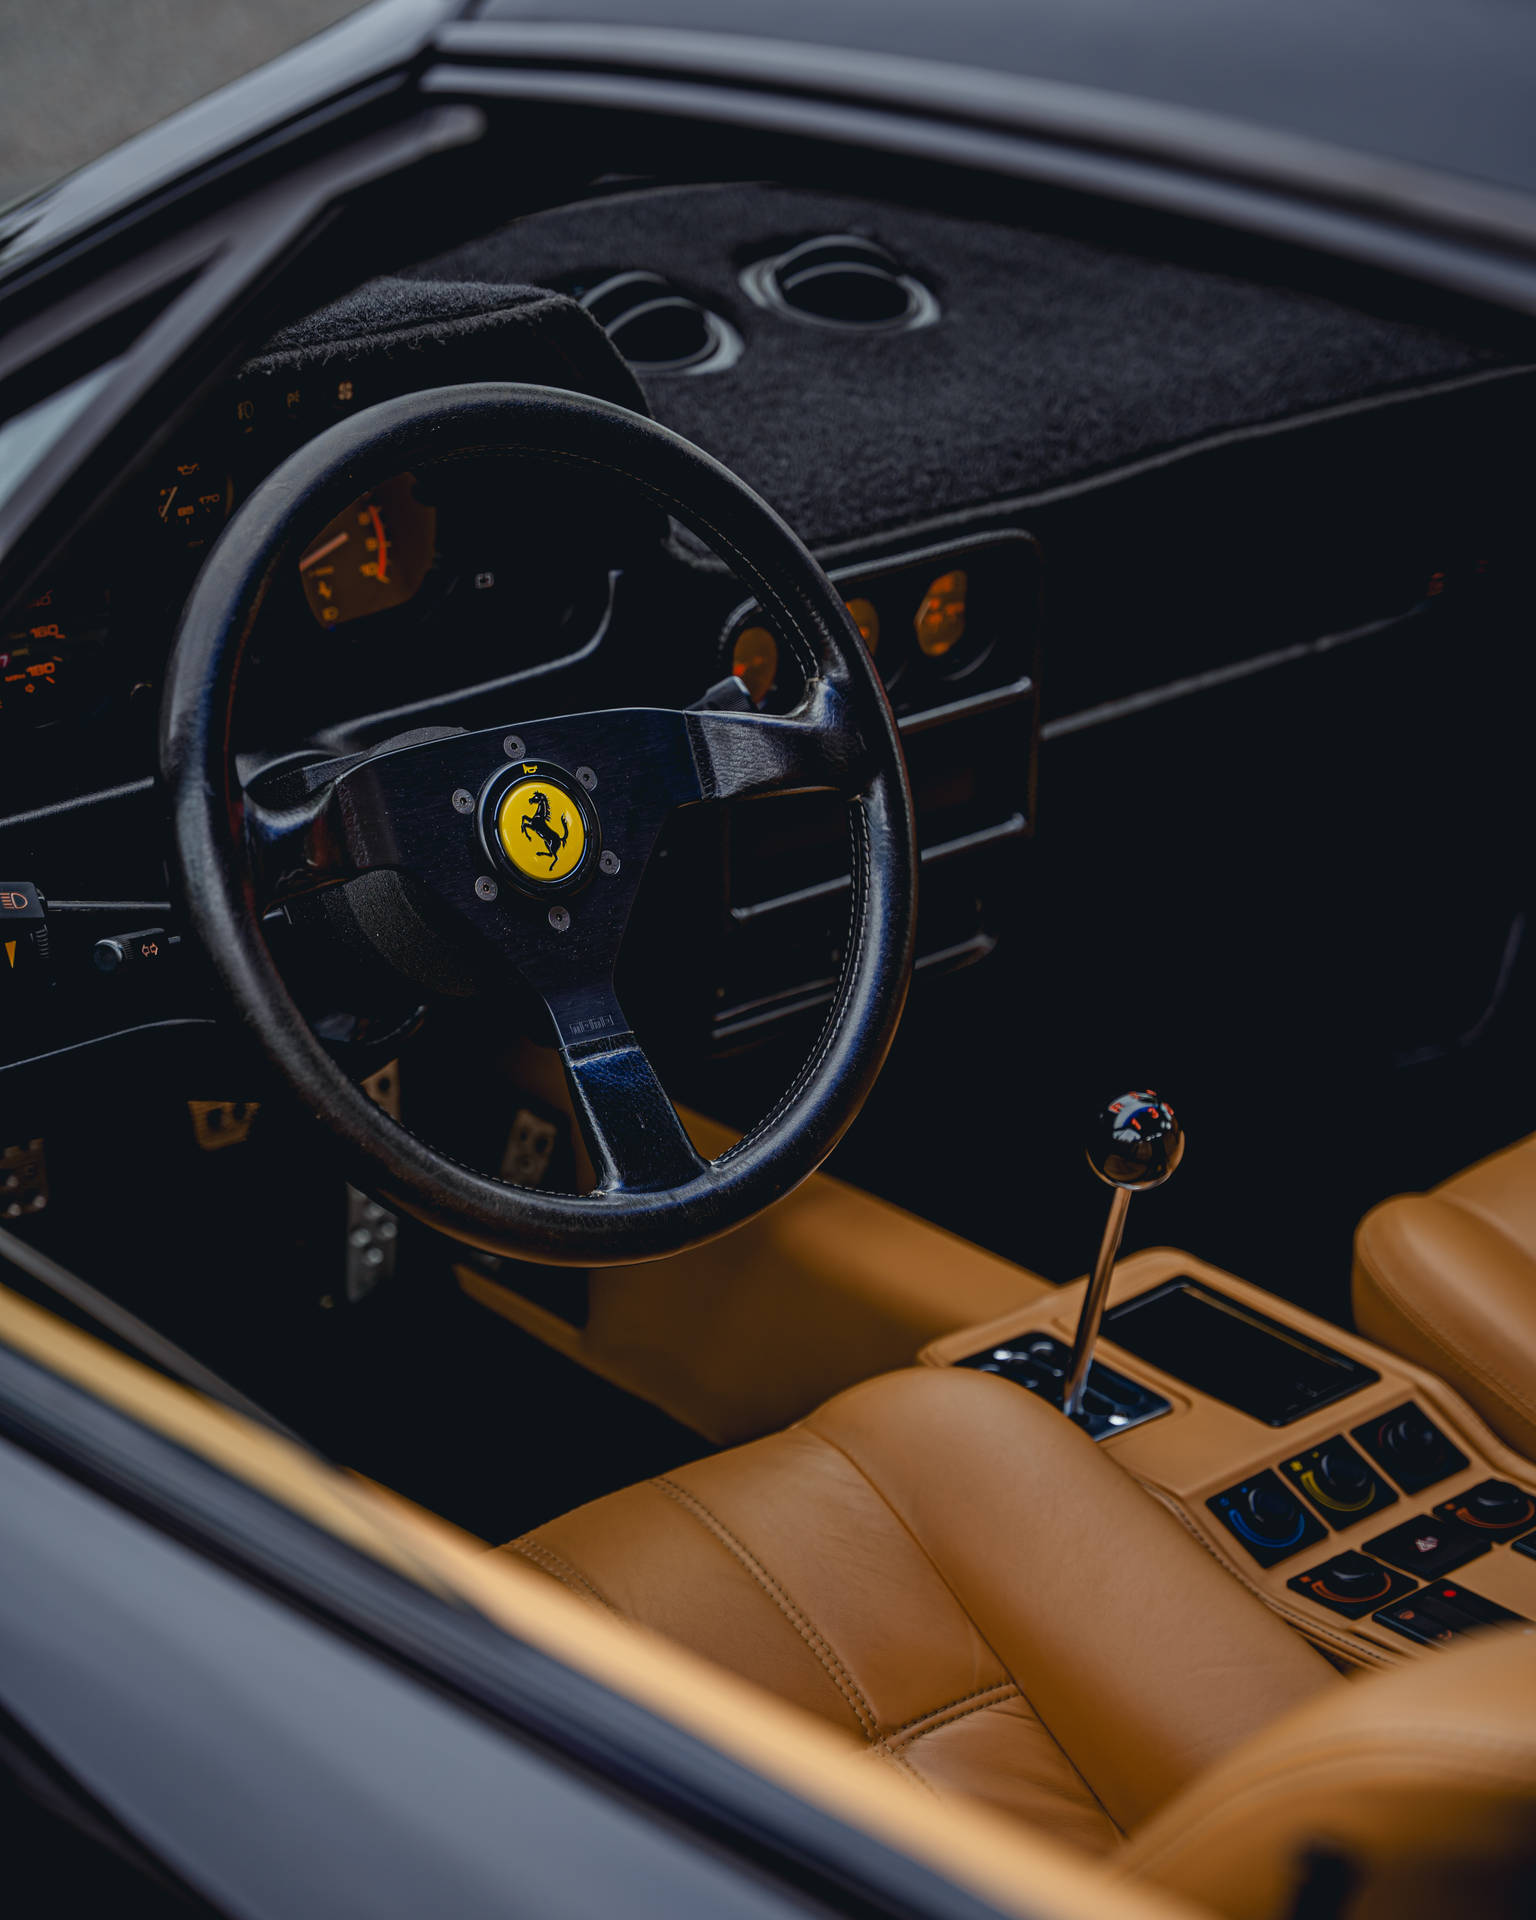 4k Ferrari Background Photos